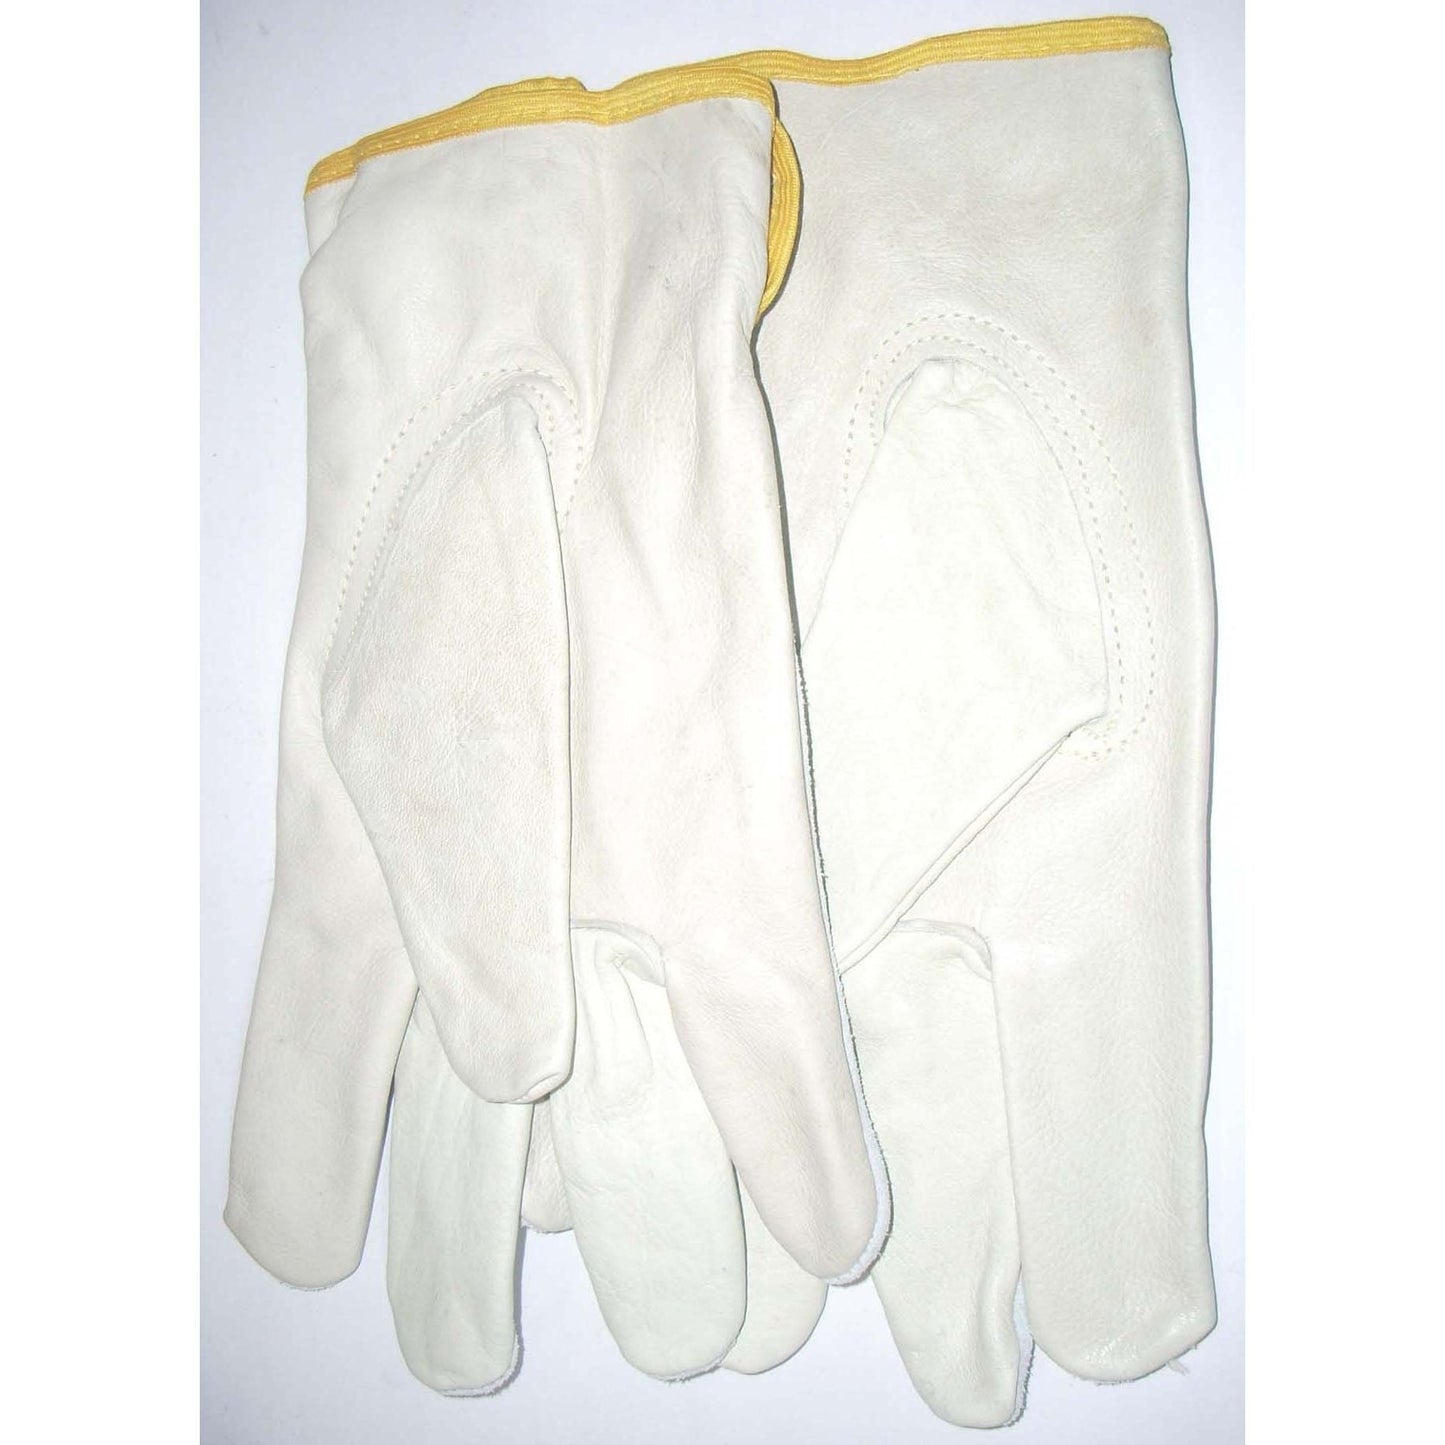 Southern Glove SBLDK2XL Cow Grain Palm Split Leather Back Driver Gloves Size 2XL